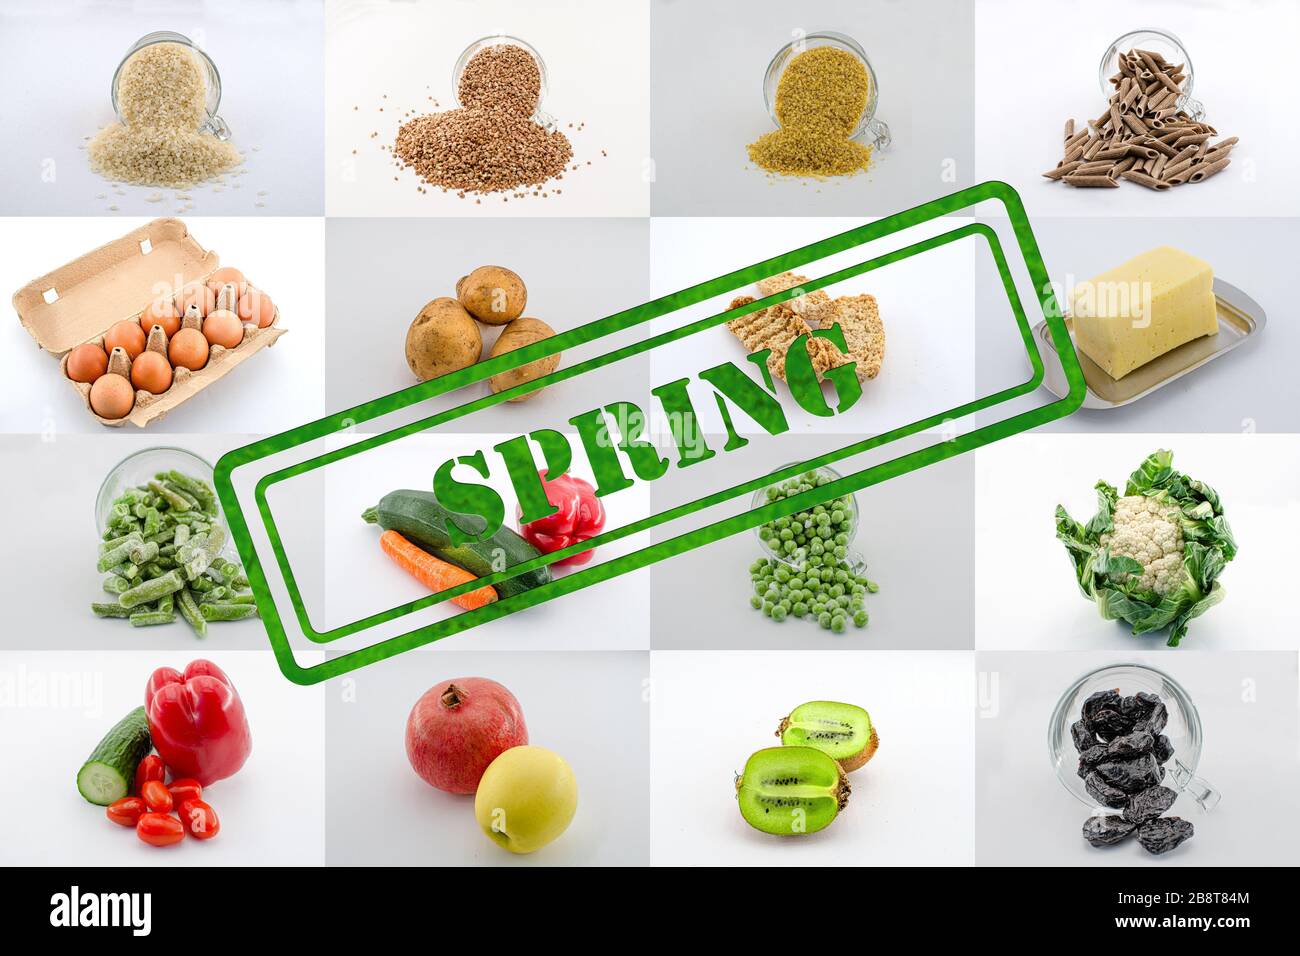 Un mosaico o collage de una variedad de plazas de comida con signo de primavera. Collage de alimentos - grañadas, frutas, verduras, queso, verduras congeladas, huevos Foto de stock